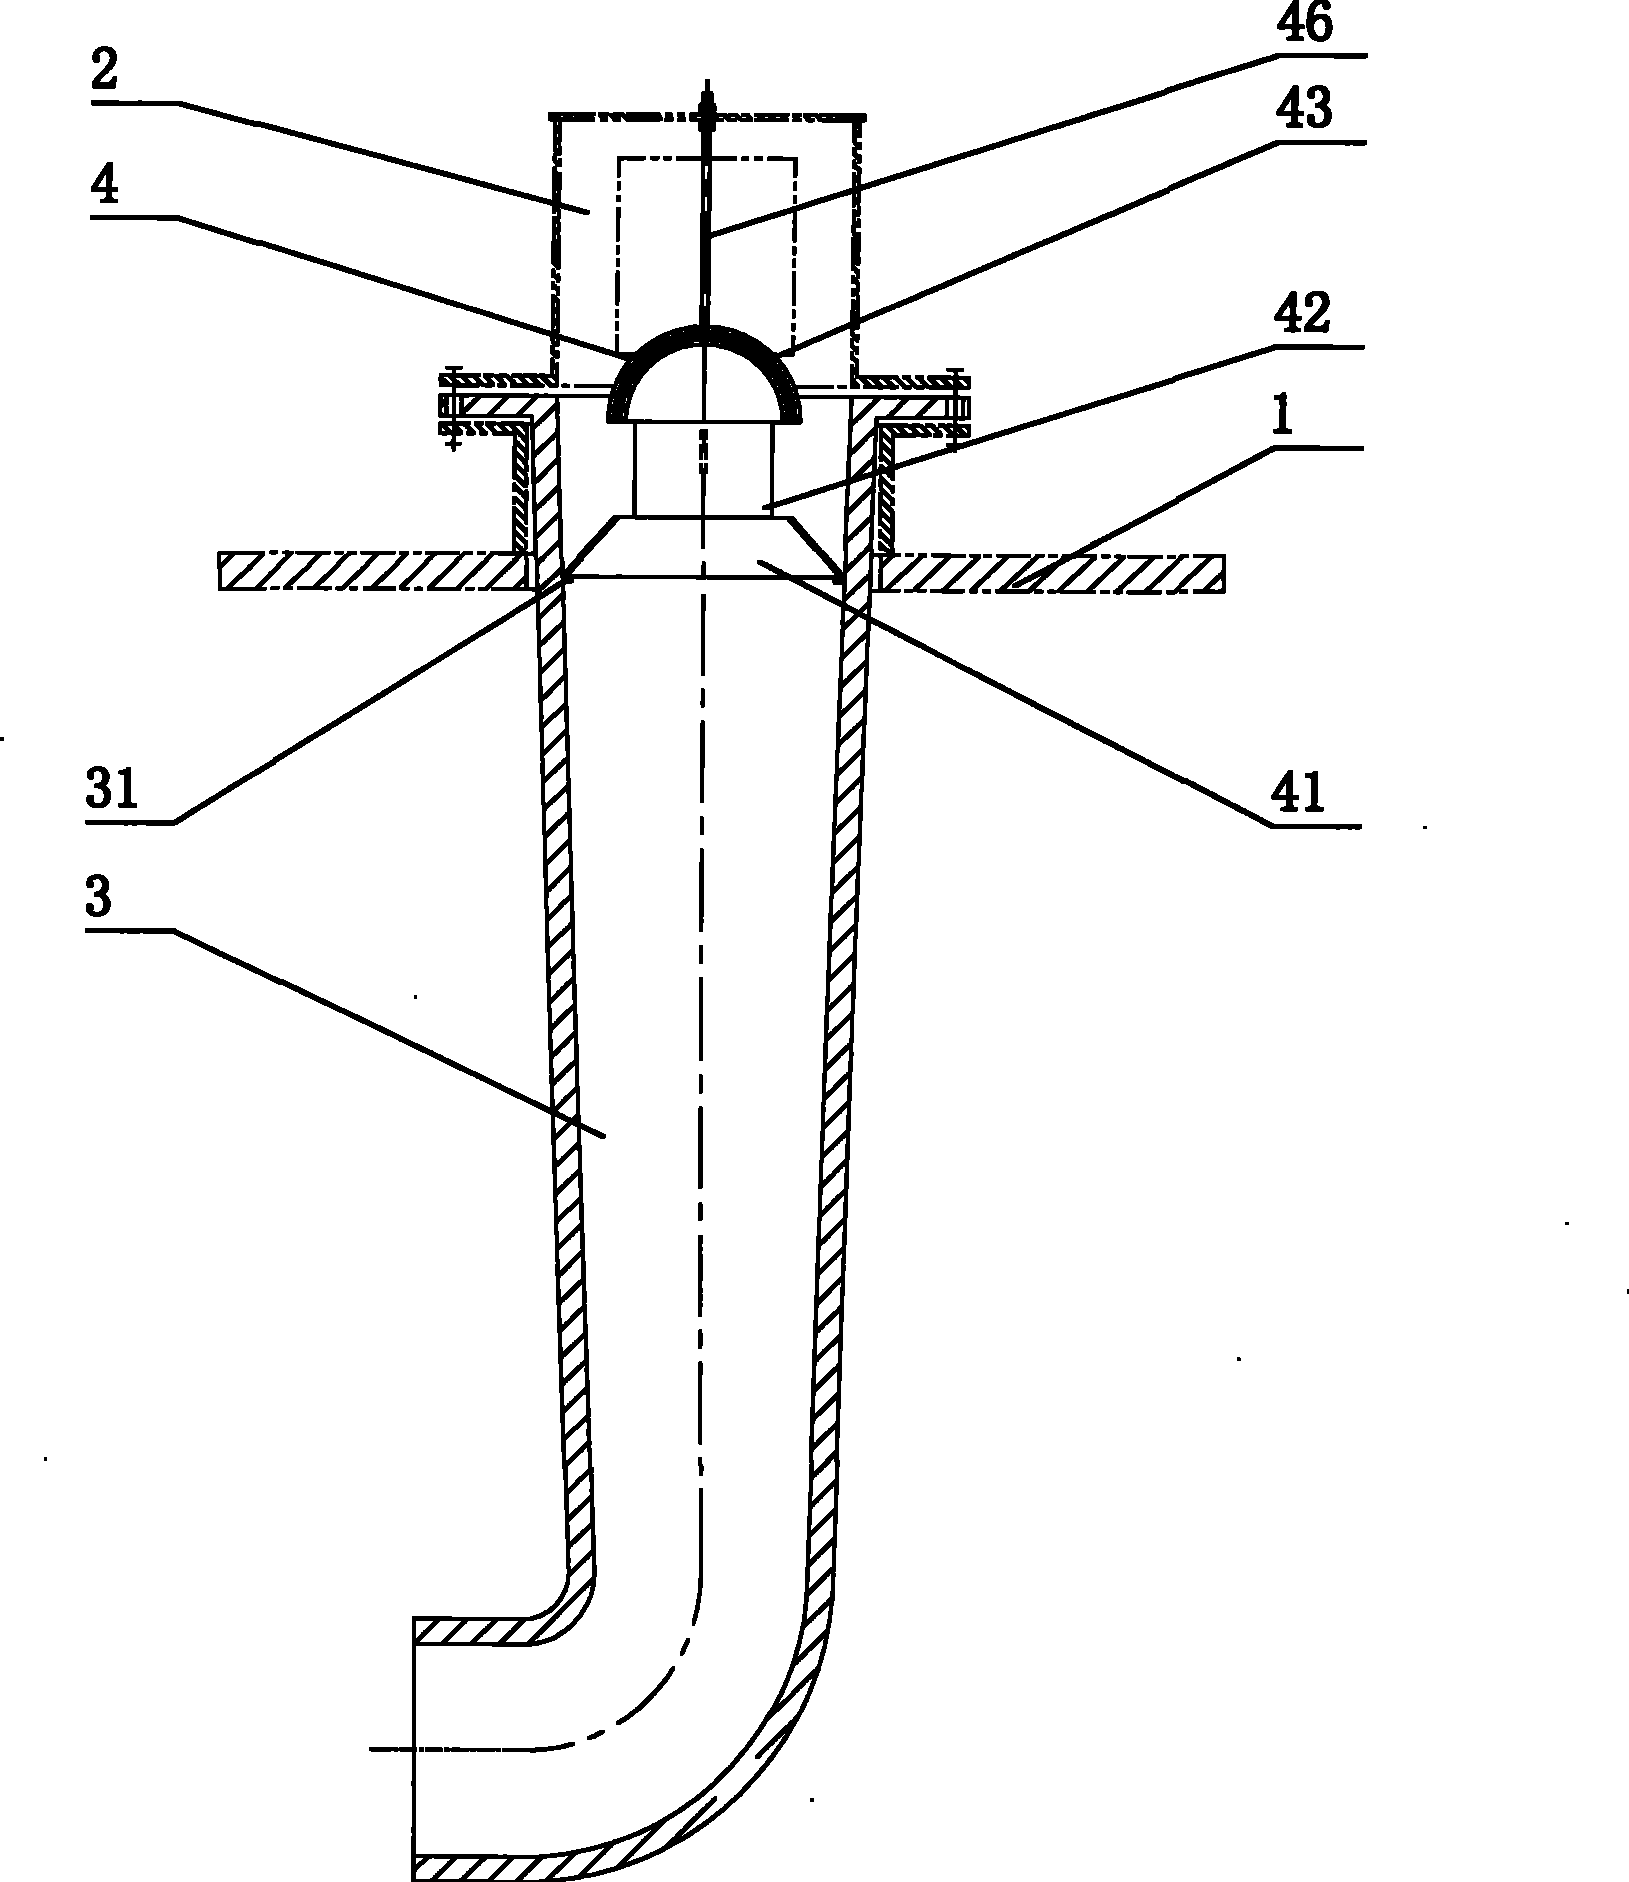 Secondary air nozzle of rotary kiln